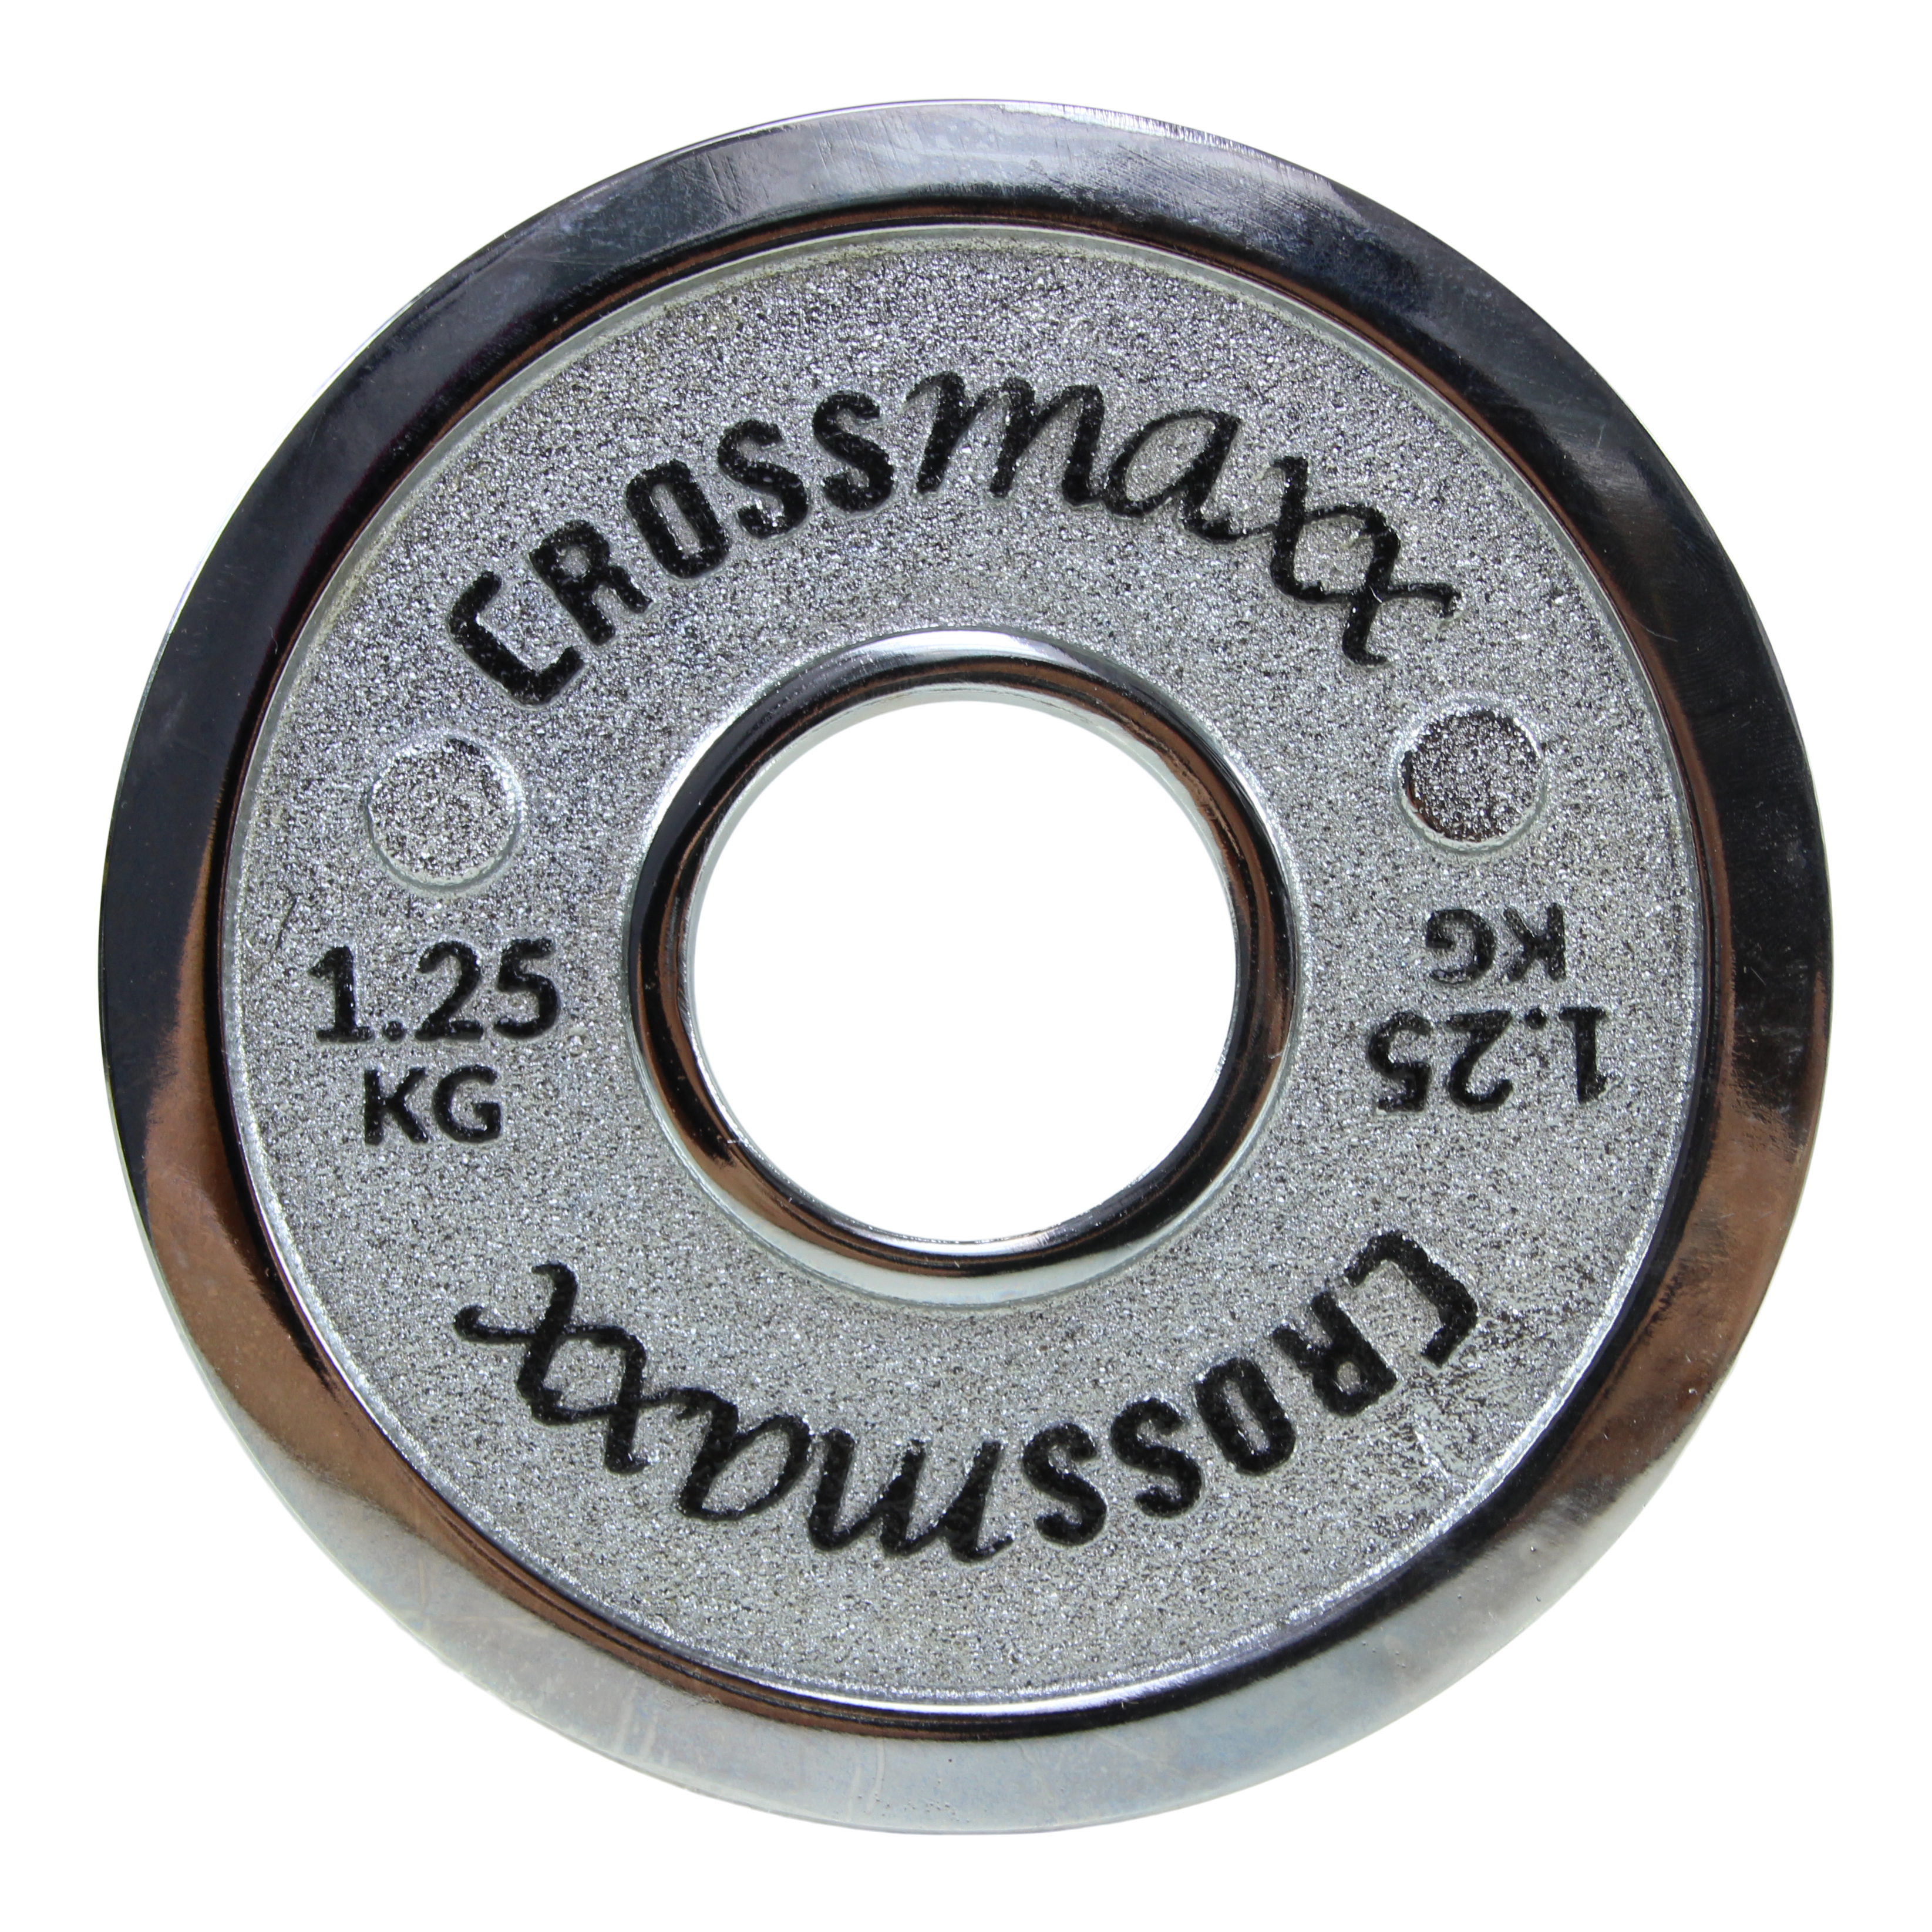 Crossmaxx kalibreret vægtskive 1,25 kg i støbejern til styrkeløft